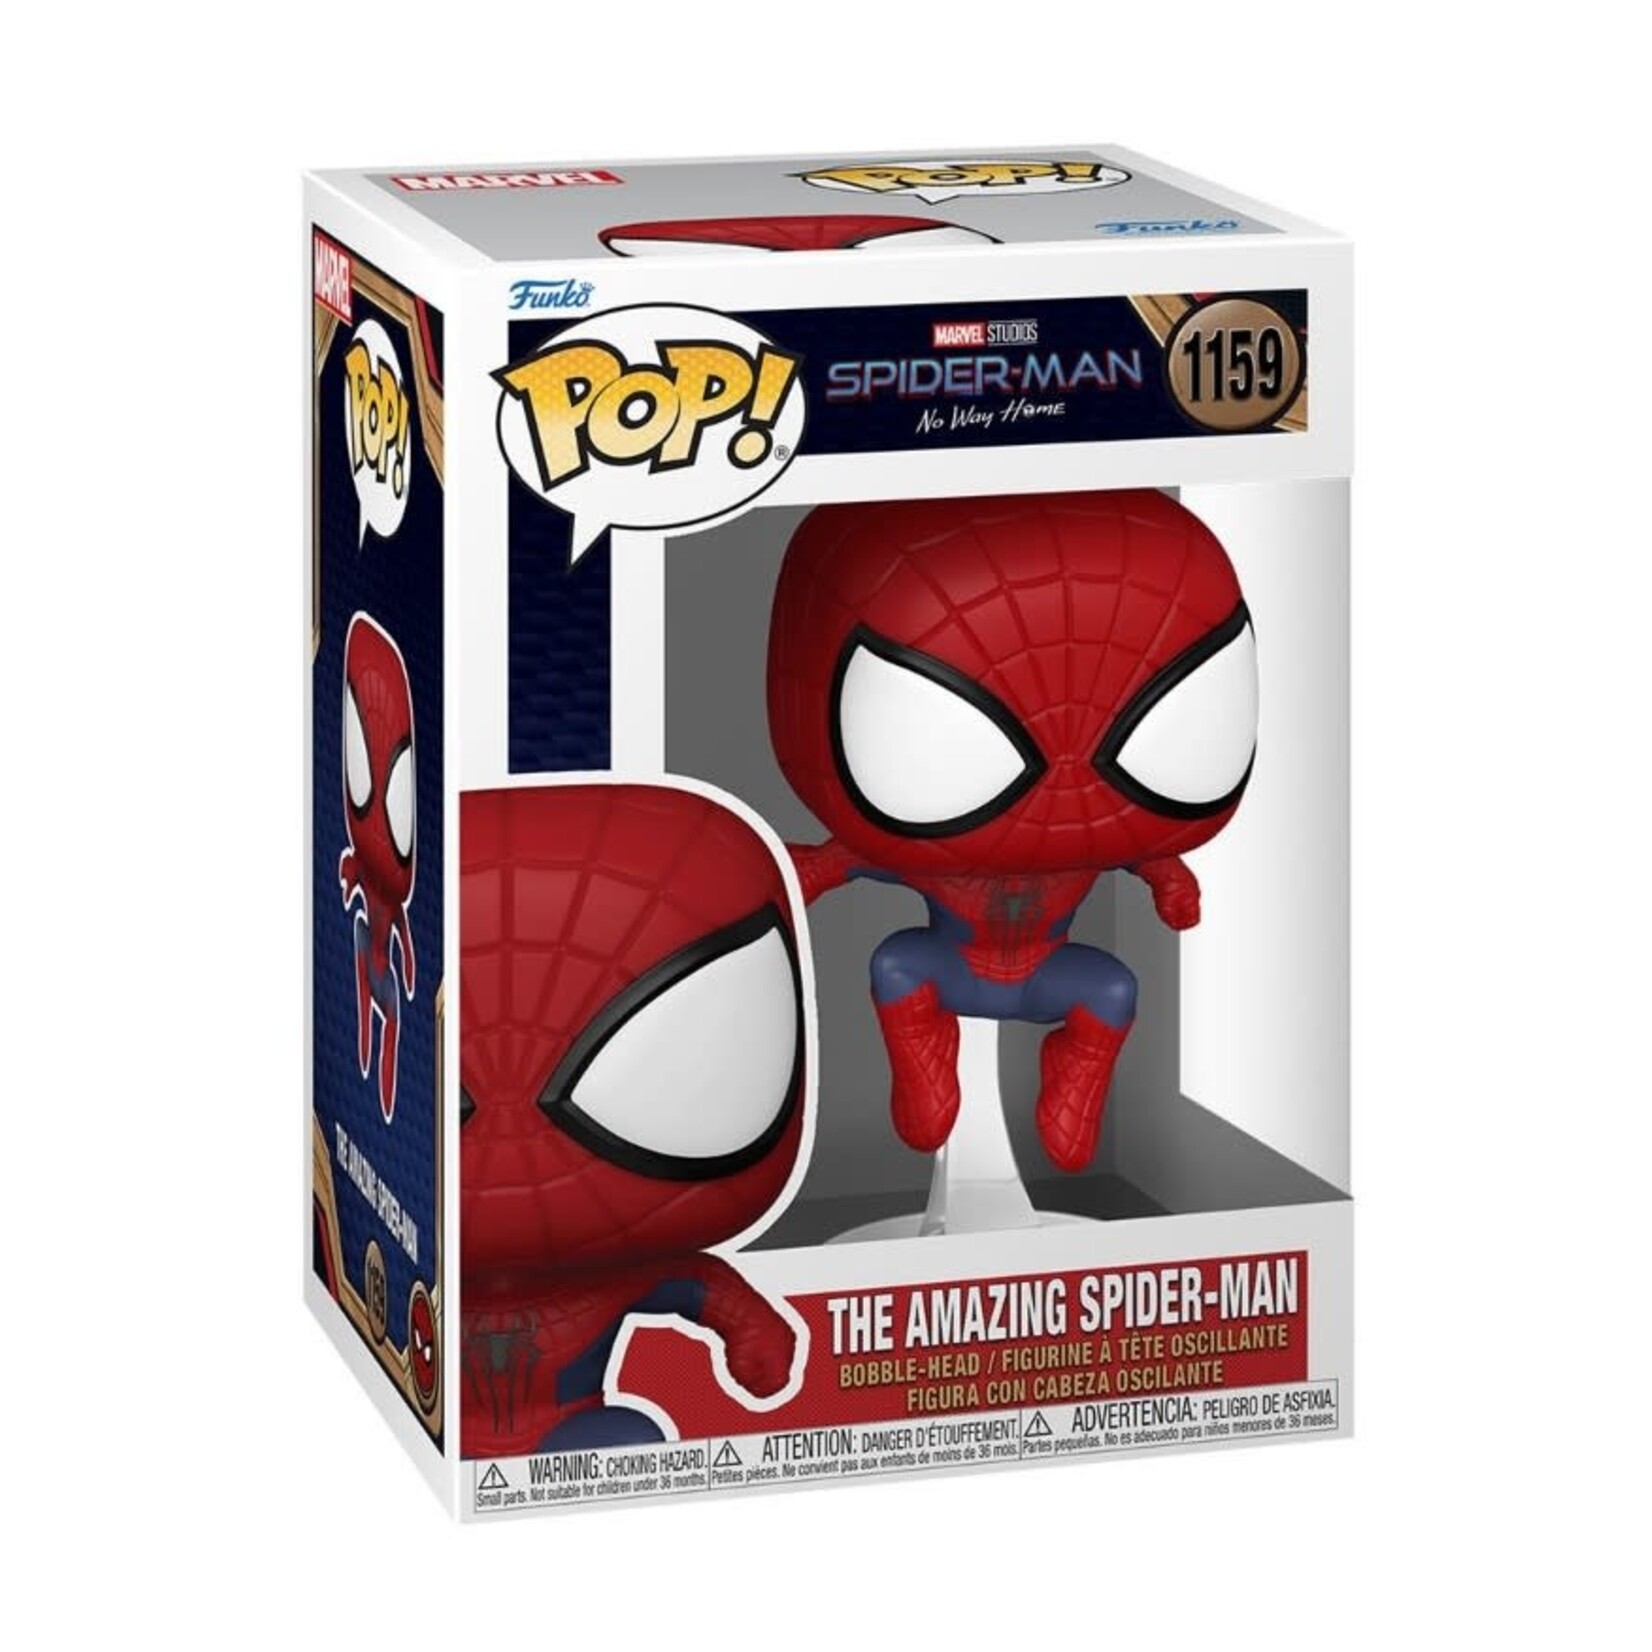 Spider-Man Spider-Man: No Way Home - The Amazing Spider-Man Funko Pop! Figure